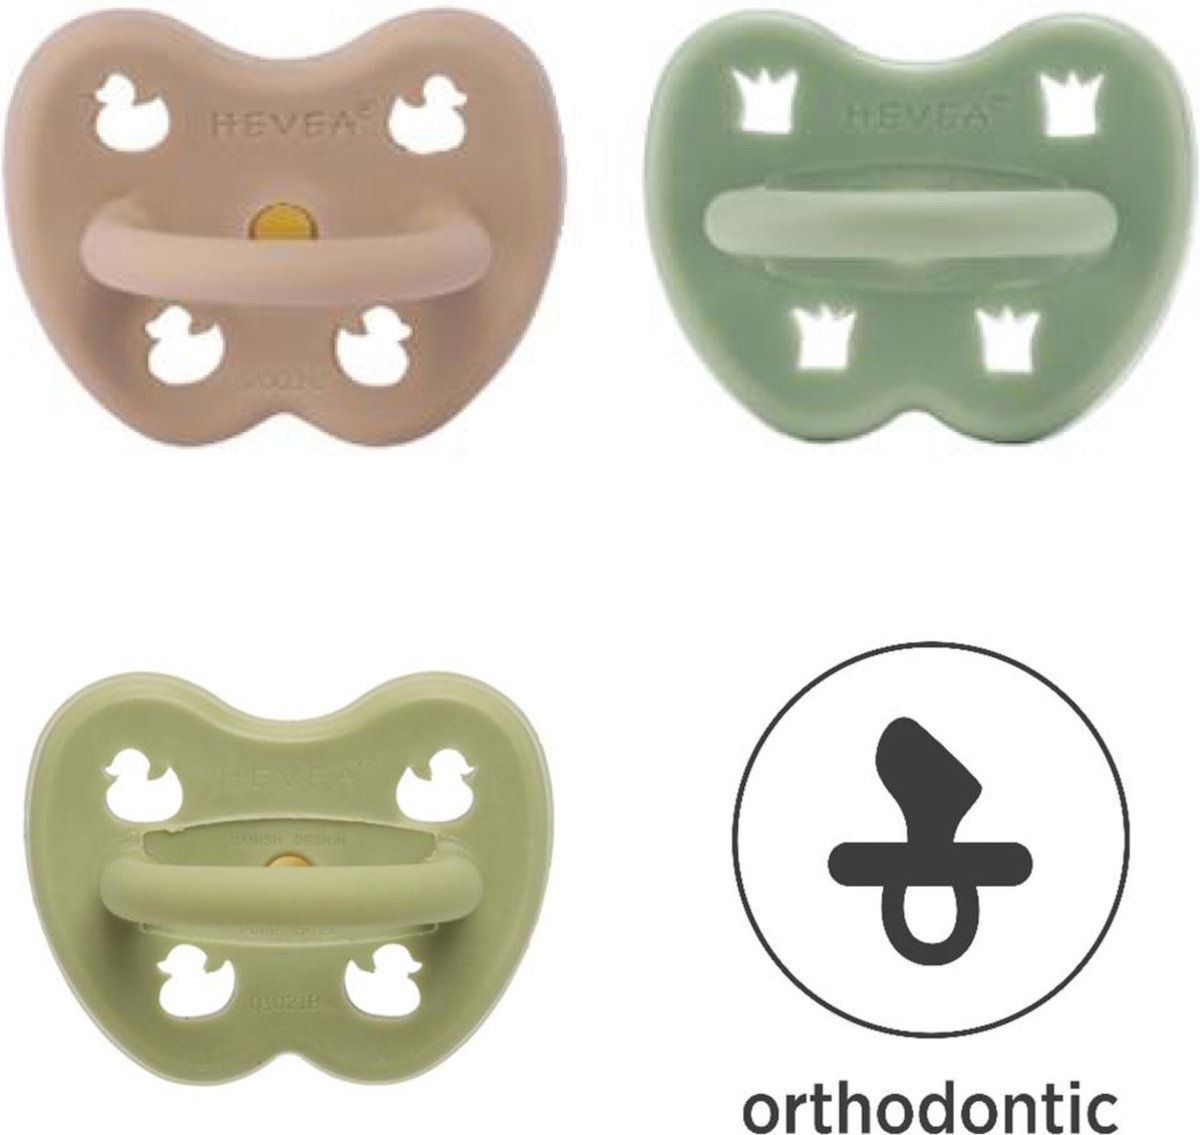 Hevea | Orthodontisch 3-36 maand | Hunter green, Tan beige, Moss green  | 100 % natuurrubber | eendjes | kroontjes